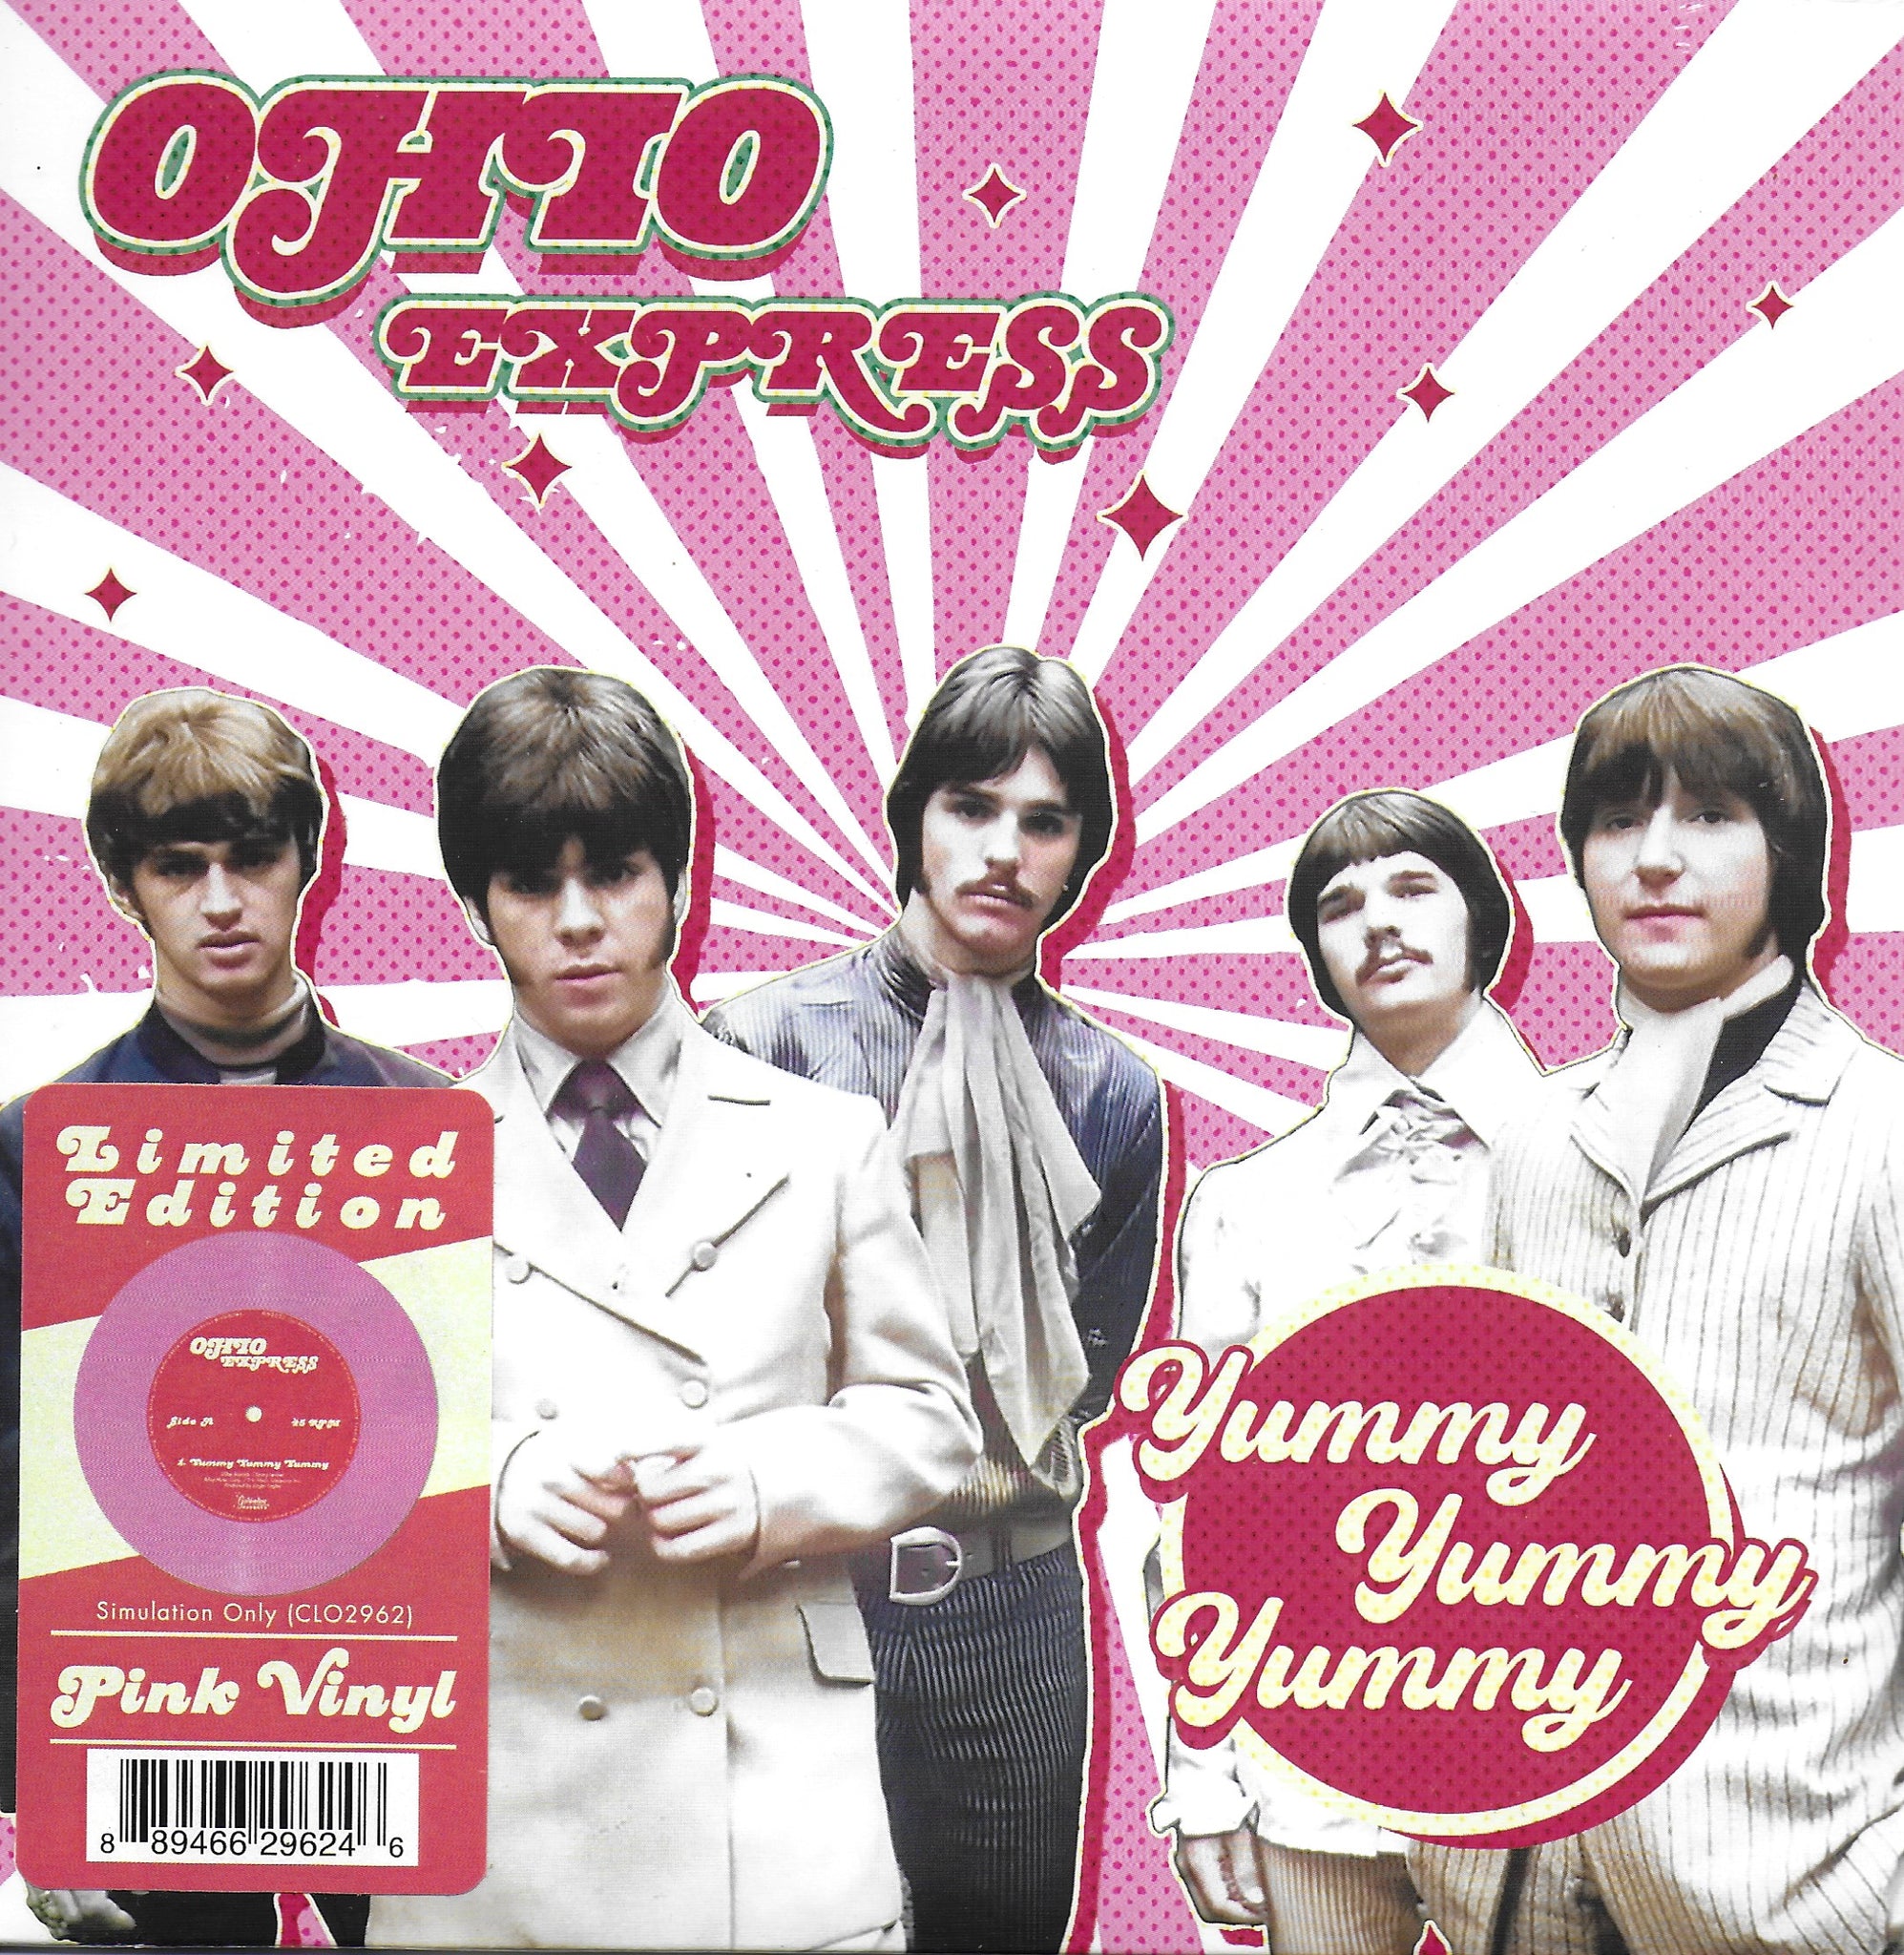 Ohio Express - Yummy yummy yummy (Limited edition, pink vinyl)